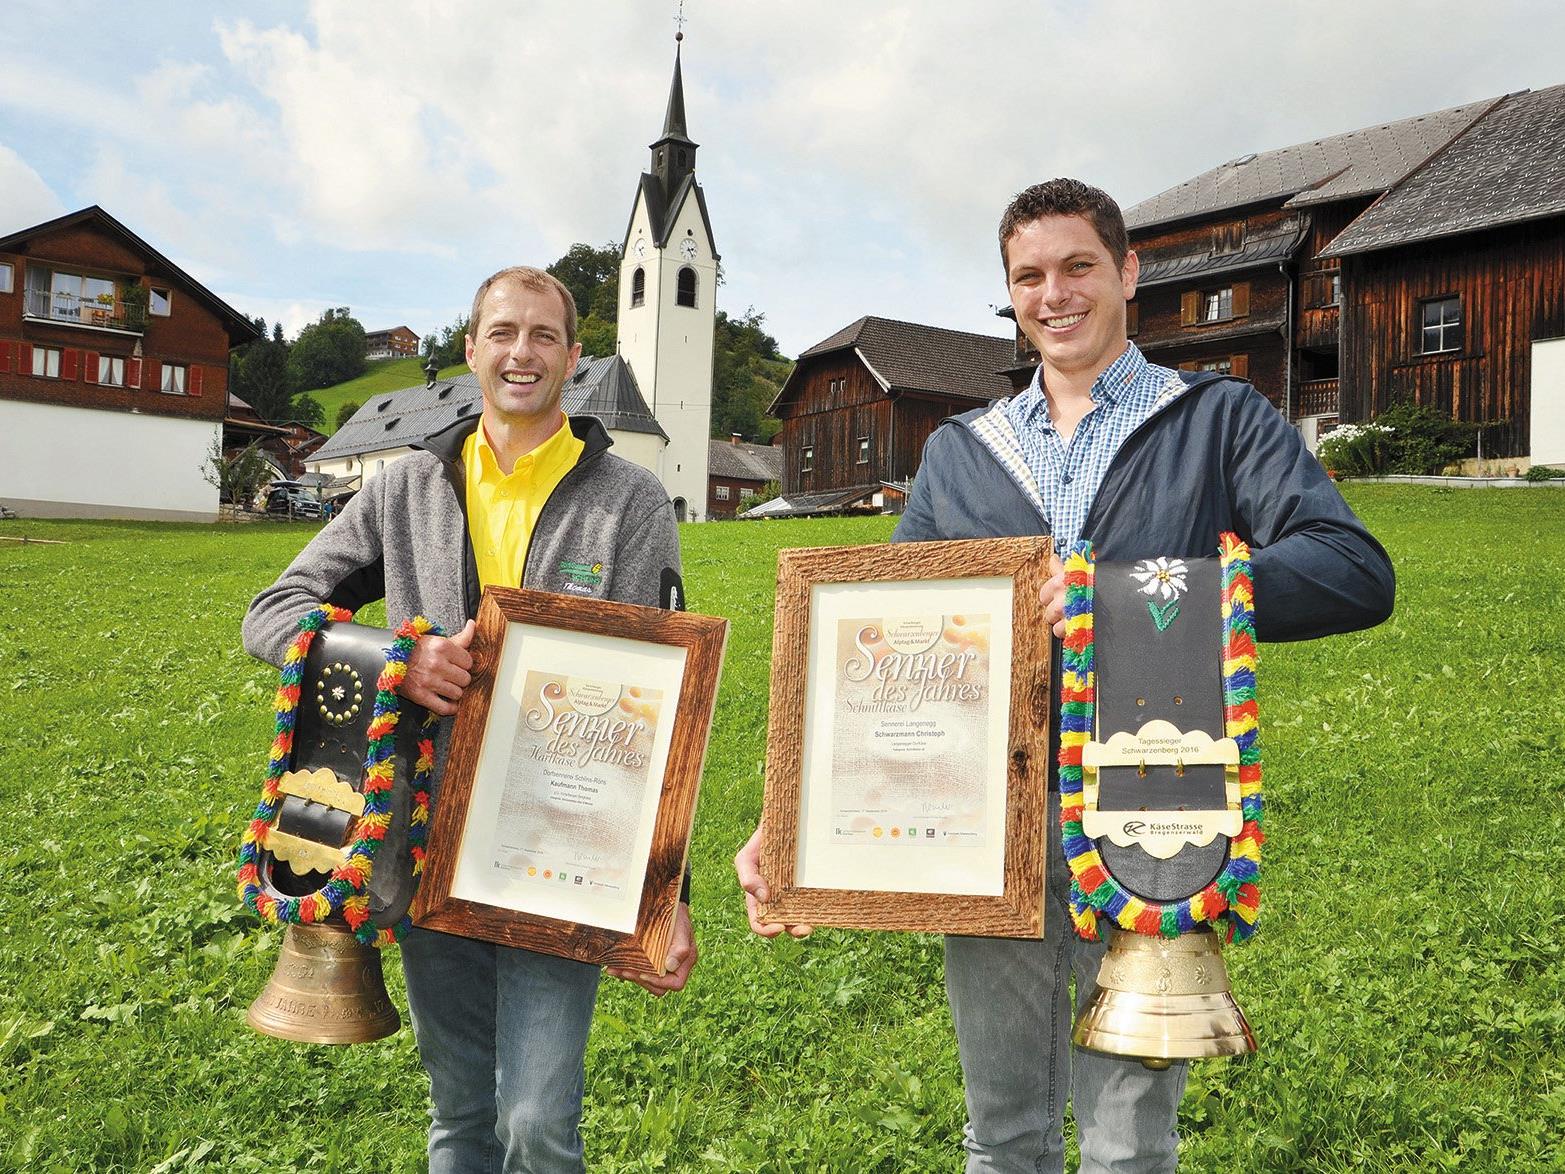 Jeweils zum "Senner des Jahres“ gekürt wurden Thomas Kaufmann von der Sennerei Schlins (links) und Christoph Schwarzmann von der Sennerei Langenegg (rechts) bei der 24. traditionellen Käseprämierung in Schwarzenberg.